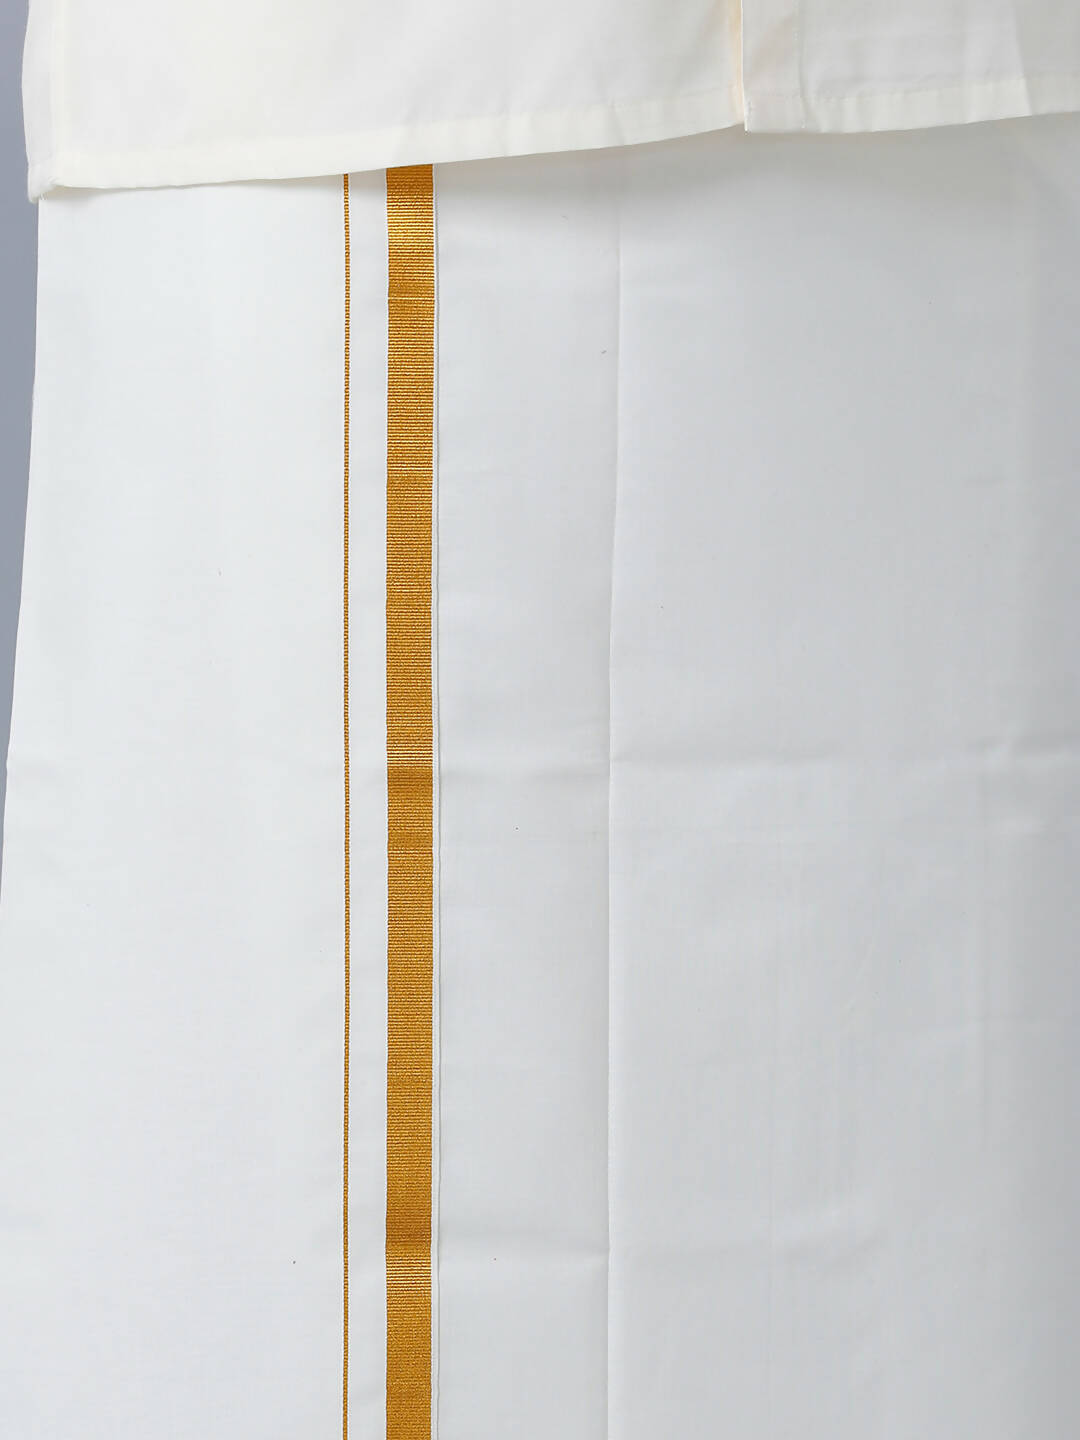 Ramraj Cotton Premium Wedding Cream Readymade Dhoti, Shirt & Towel Set Dhanvanthri - Distacart